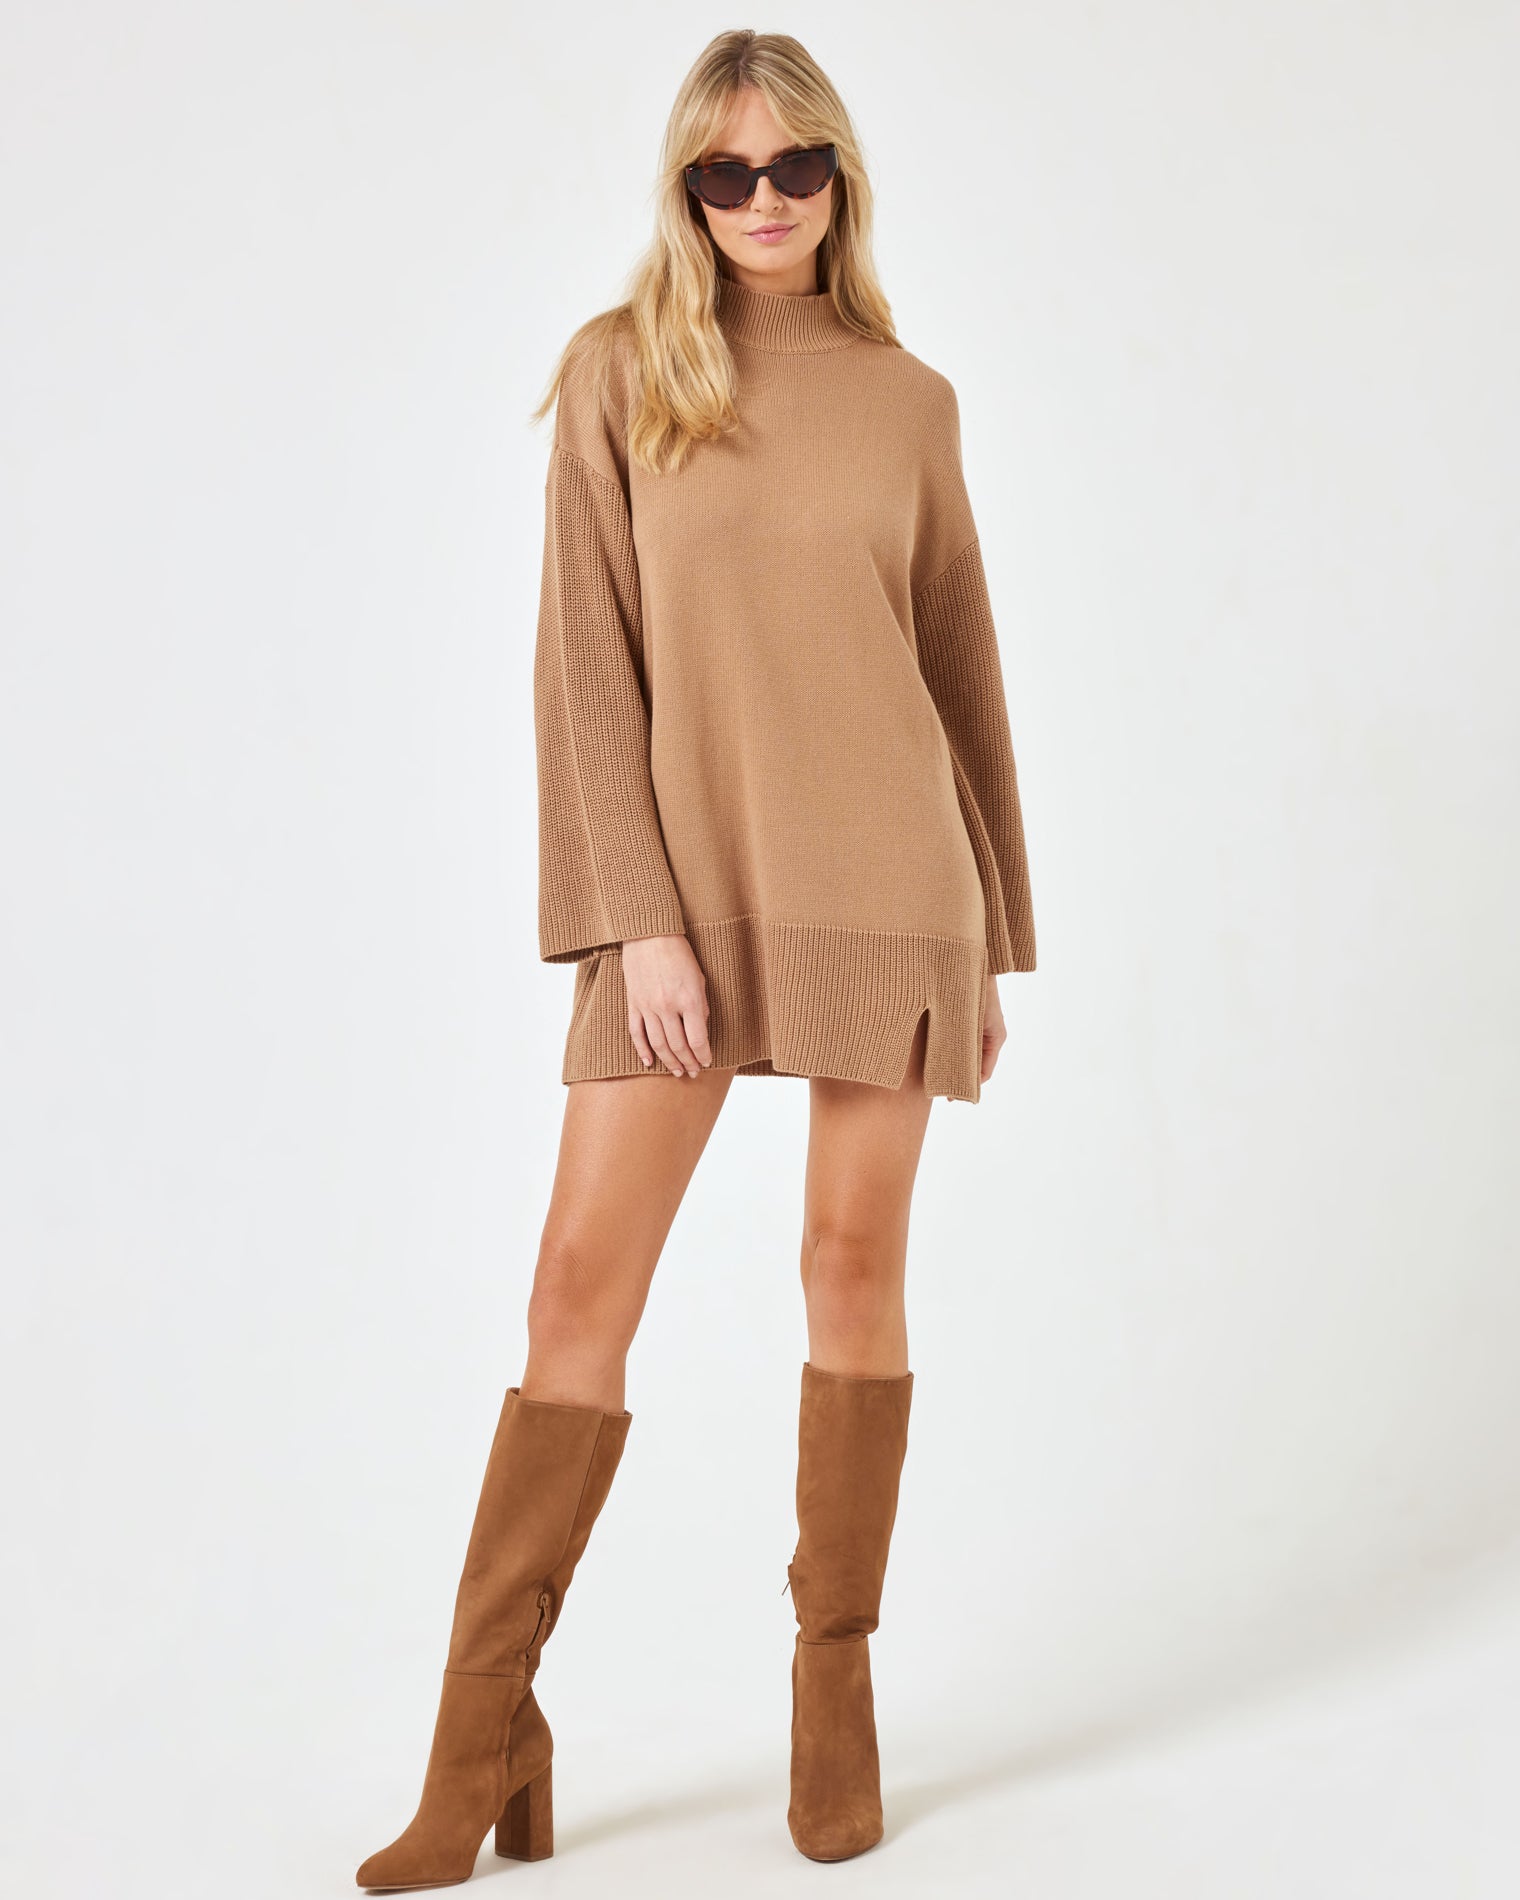 Lacy Dress - Camel Camel | Model: Lura (size: S)